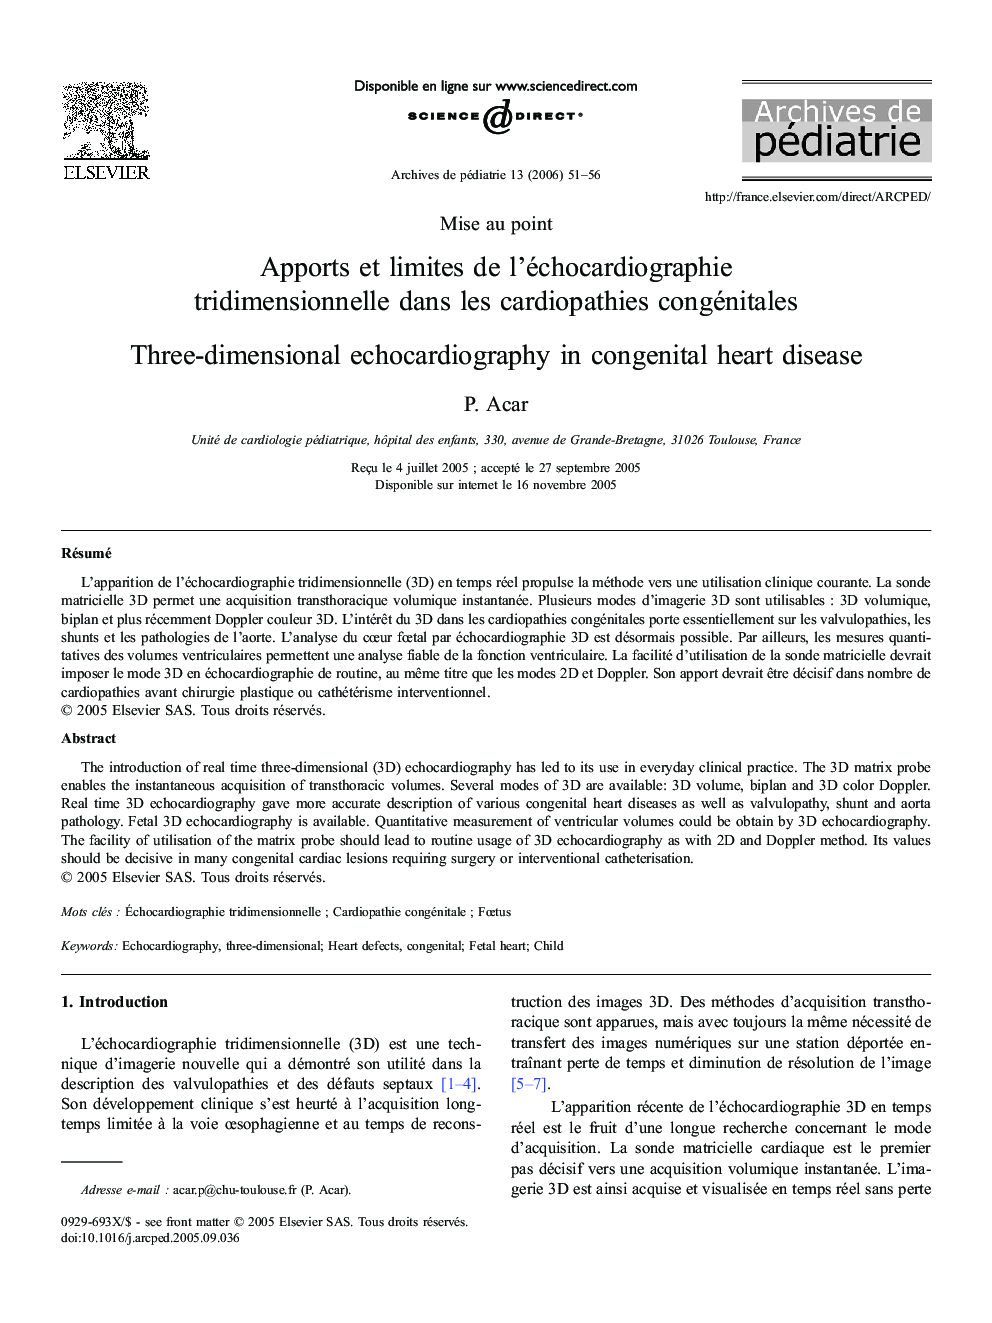 Apports et limites de l'échocardiographie tridimensionnelle dans les cardiopathies congénitales